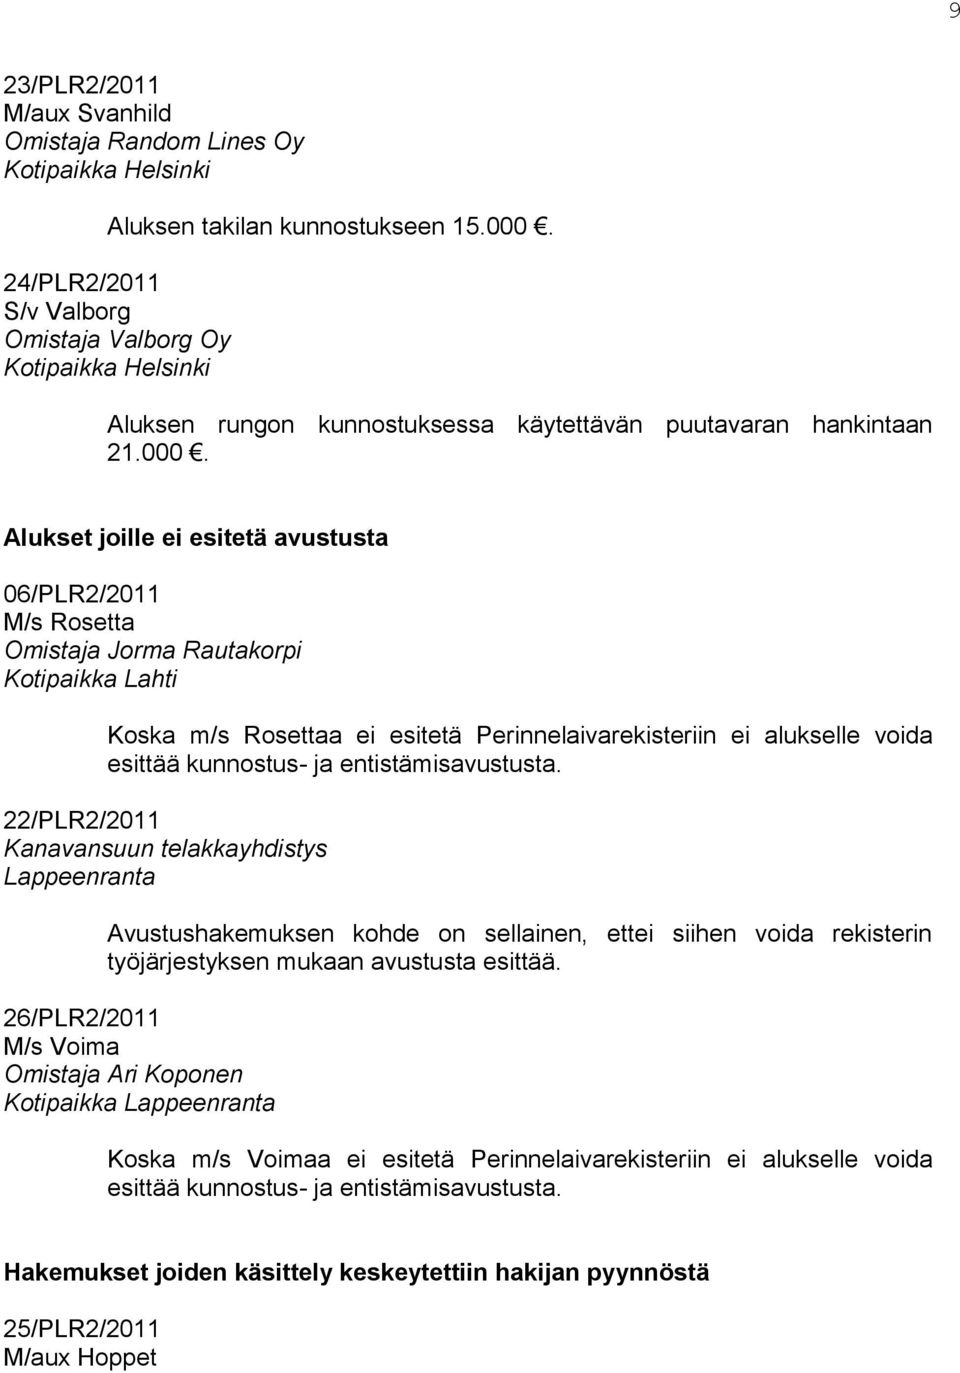 Alukset joille ei esitetä avustusta 06/PLR2/2011 M/s Rosetta Omistaja Jorma Rautakorpi Kotipaikka Lahti Koska m/s Rosettaa ei esitetä Perinnelaivarekisteriin ei alukselle voida esittää kunnostus- ja